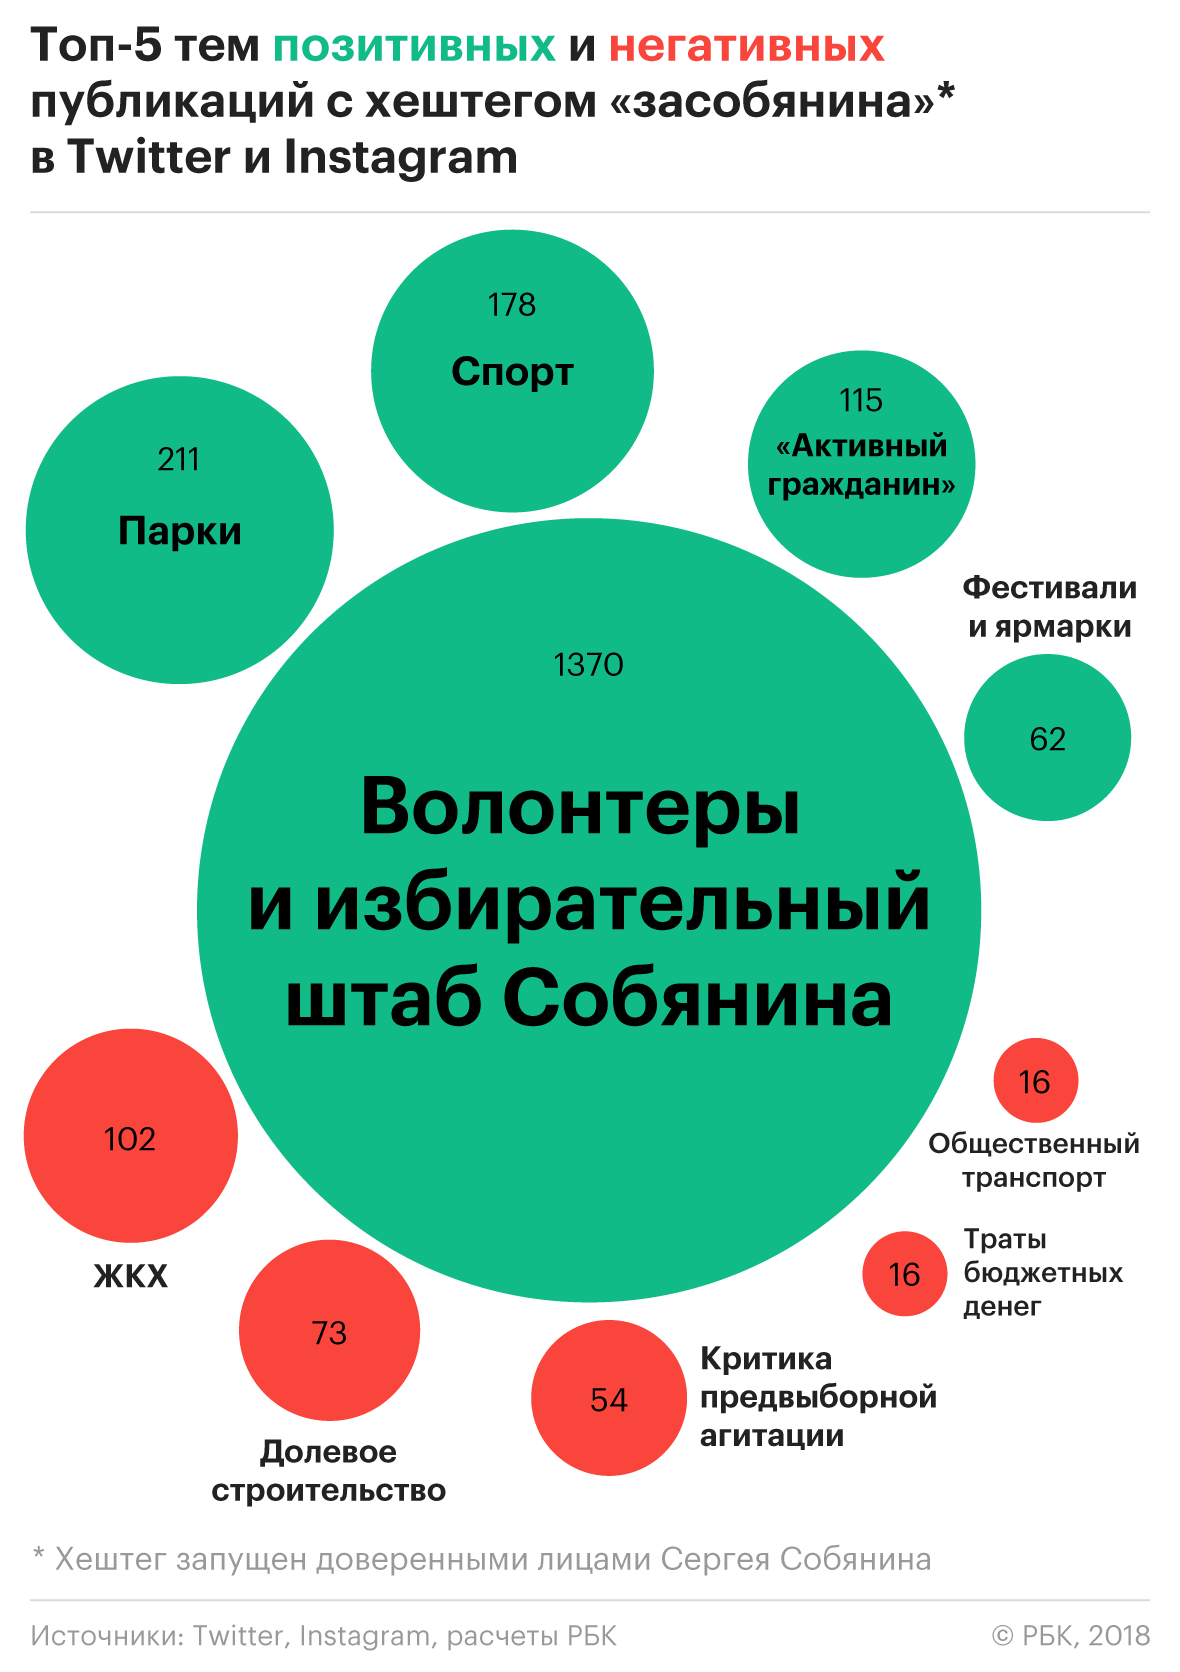 СМИ упоминали Собянина во время кампании вдвое чаще других кандидатов